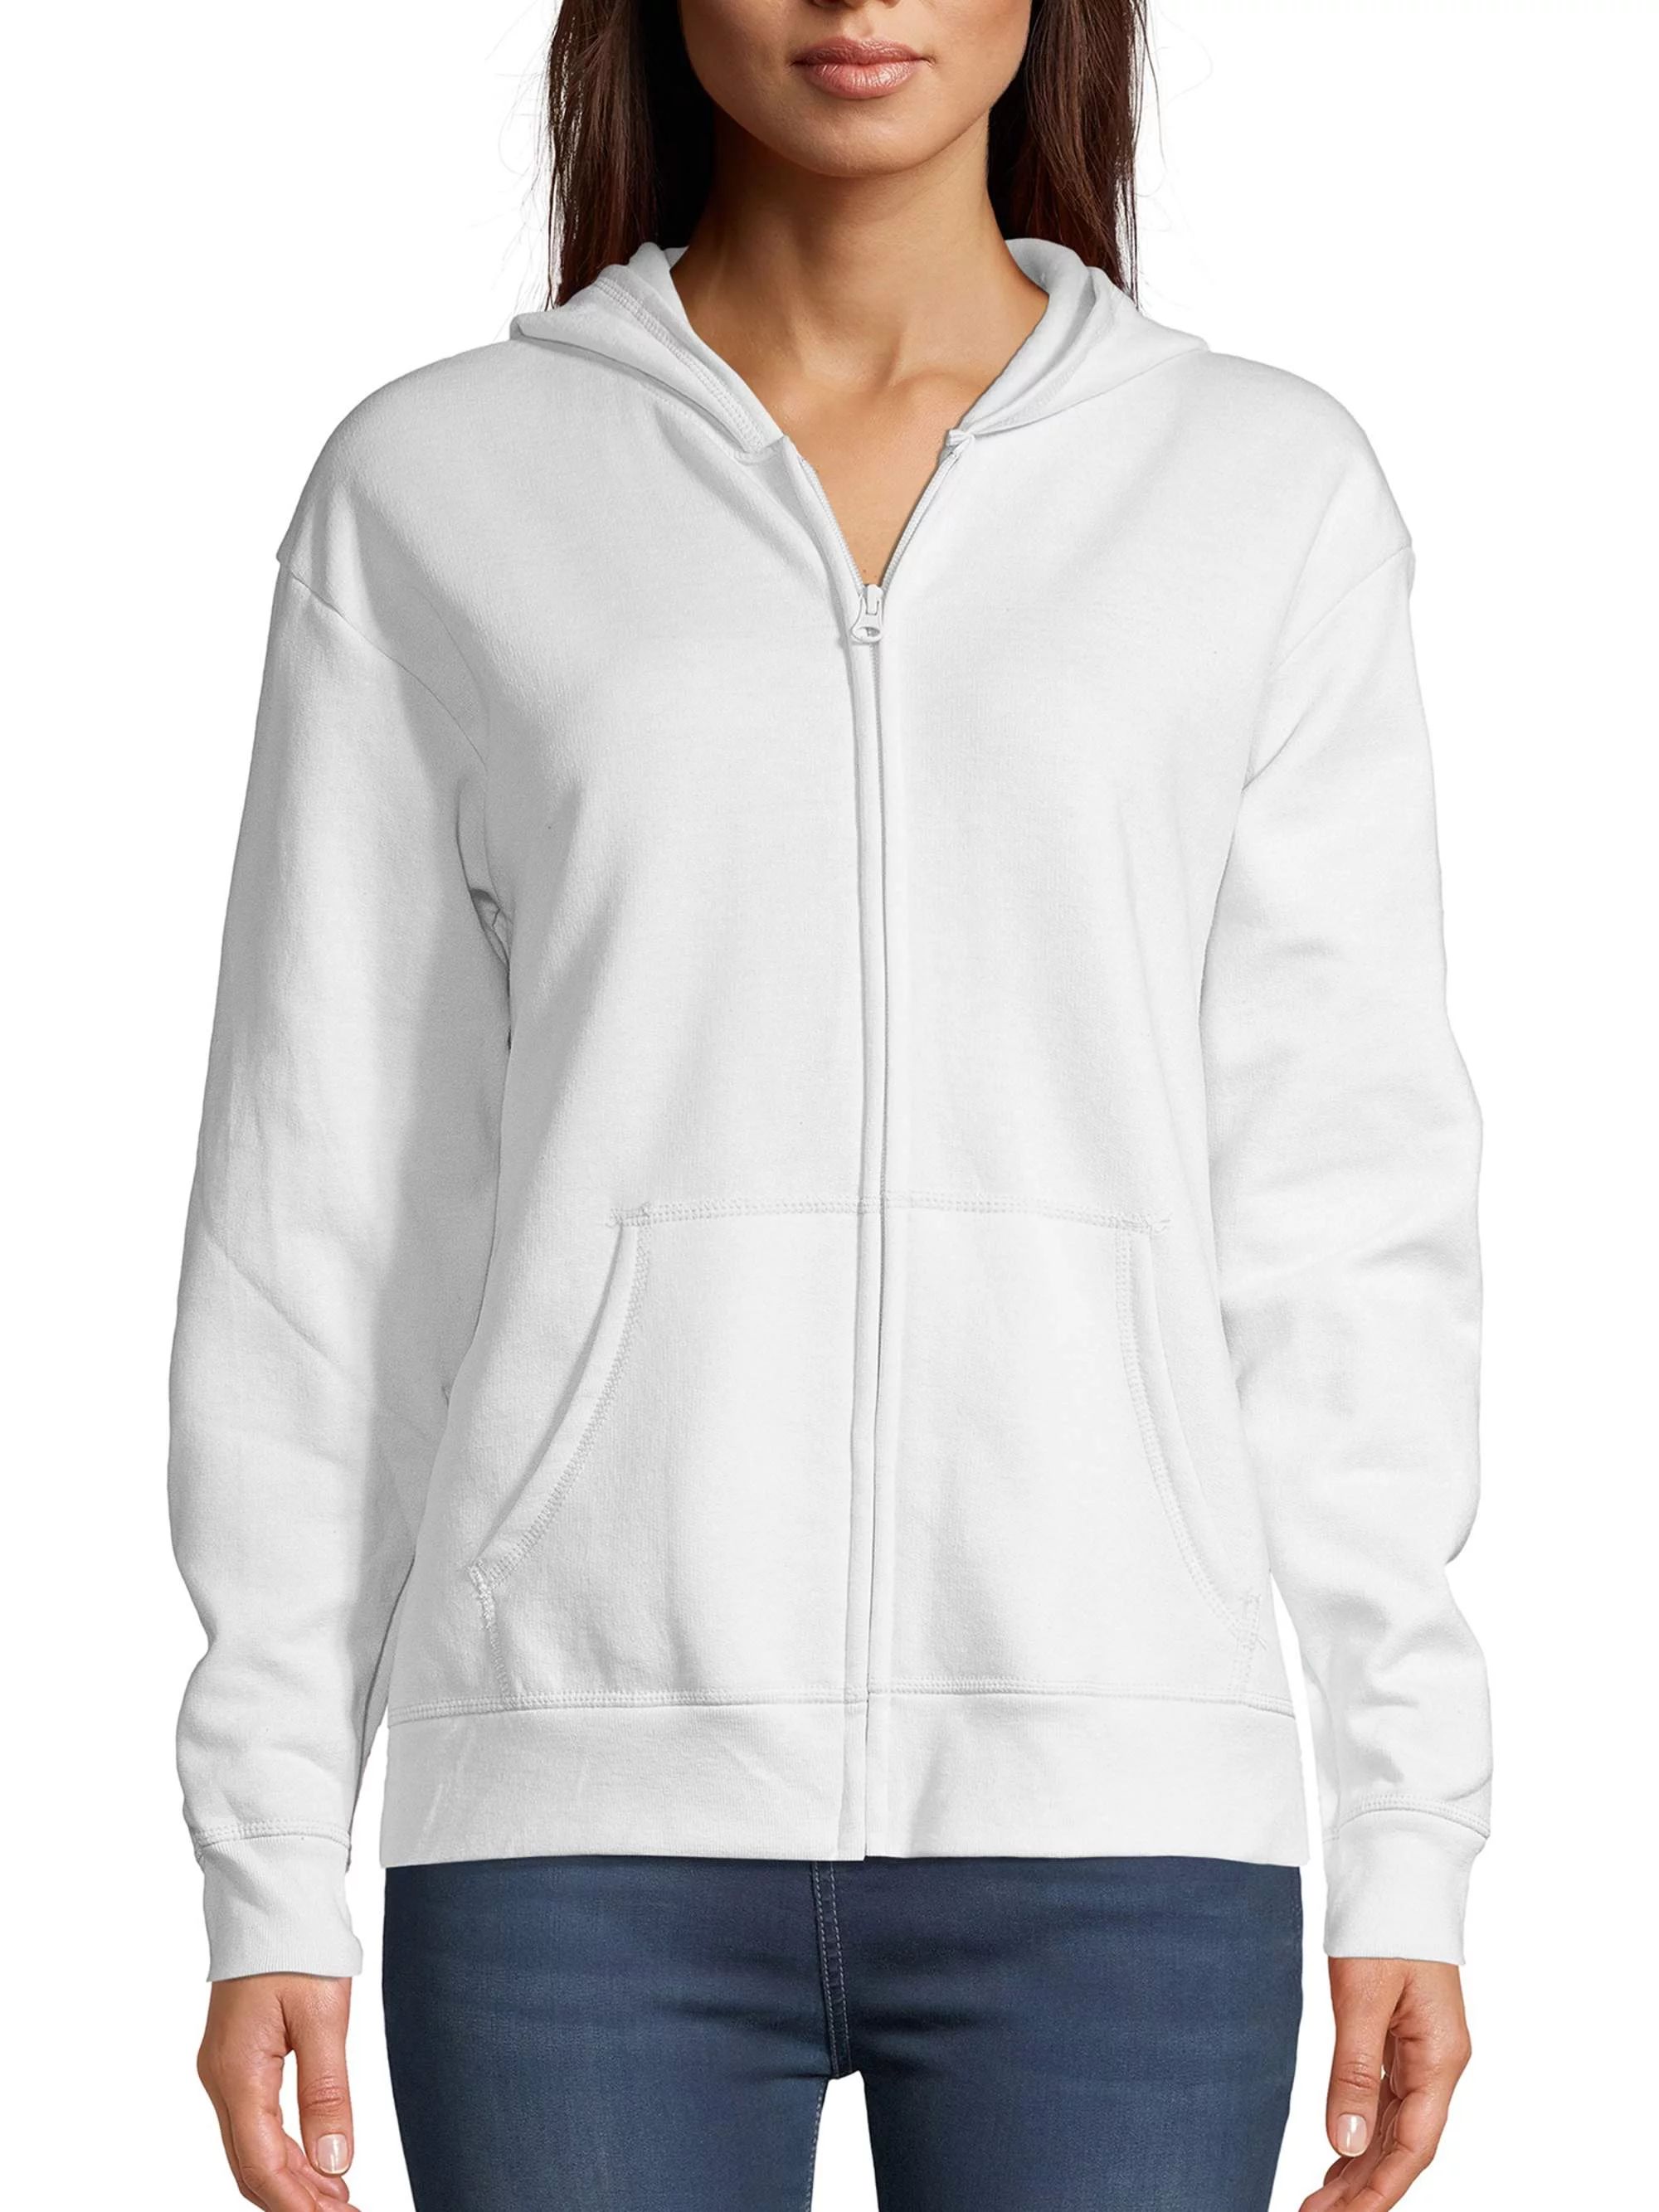 Hanes ComfortSoft EcoSmart Women's Fleece Full-Zip Hoodie Sweatshirt | Walmart (US)